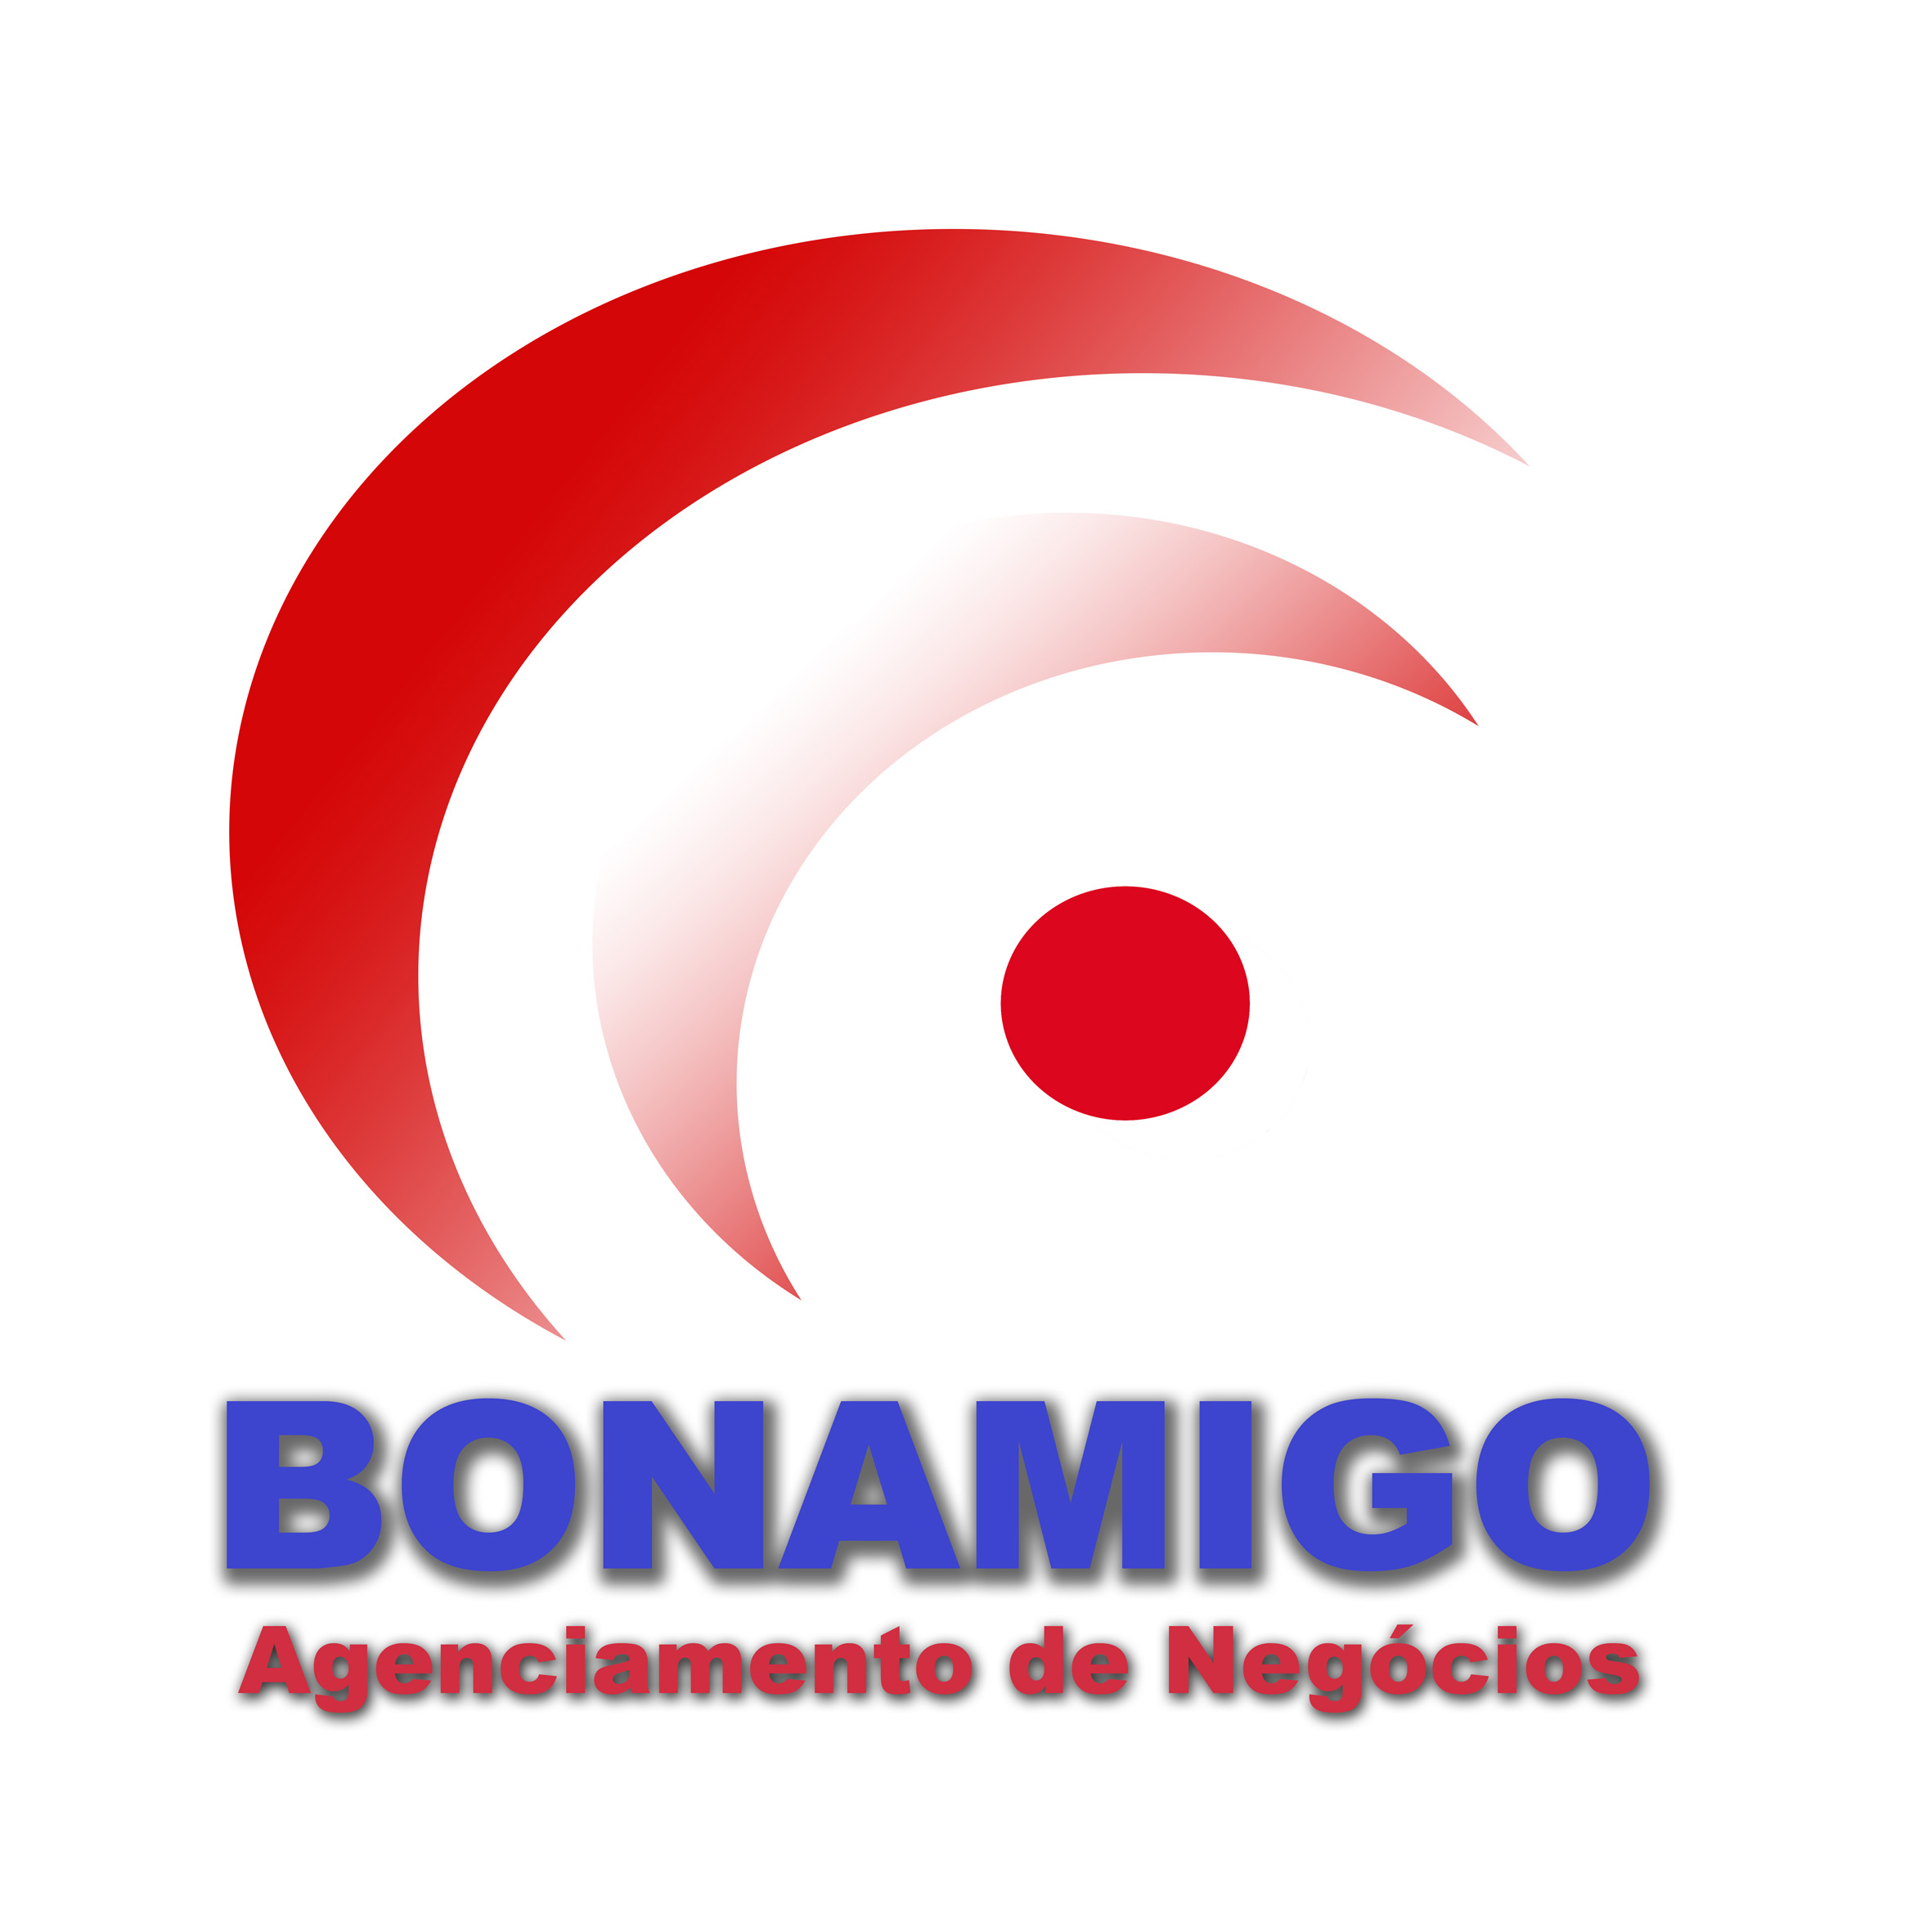 Bonamigo Agenciamento de Negócios - Consultoria - Geração de Energia Foto-Voltaica - Farroupilha/RS